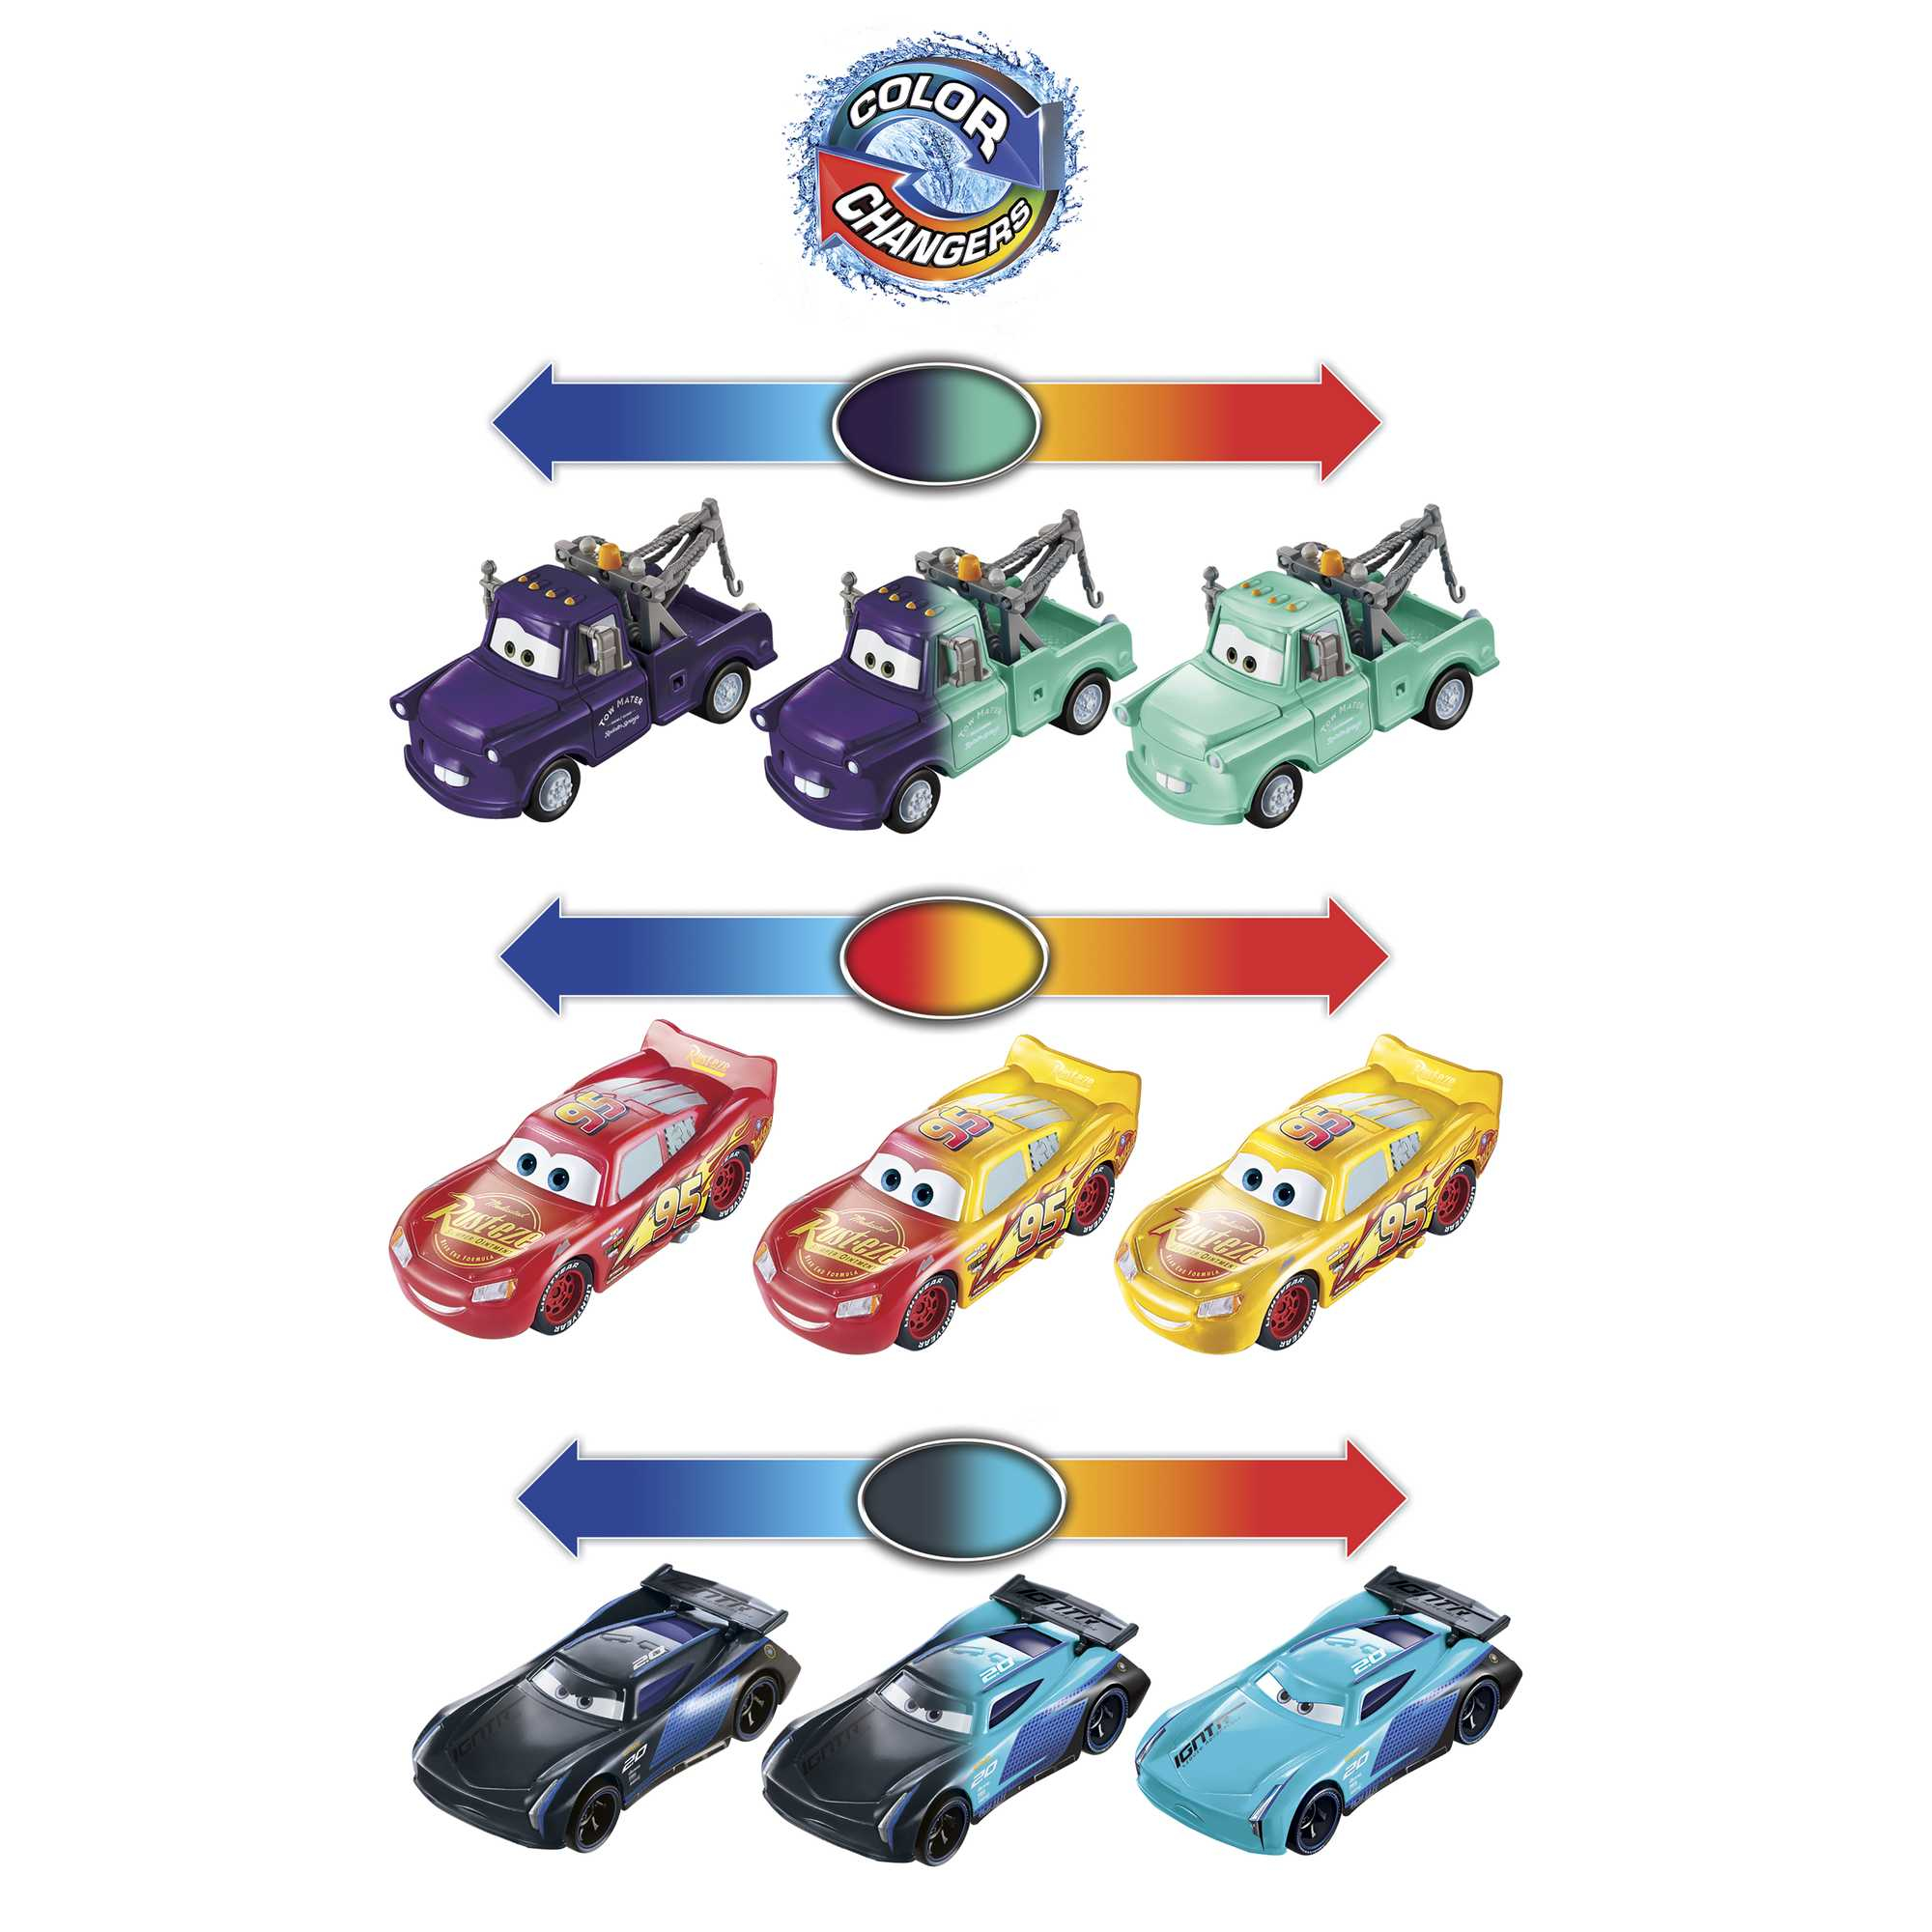 Disney Store Gourde Disney Pixar Cars : Sur la route